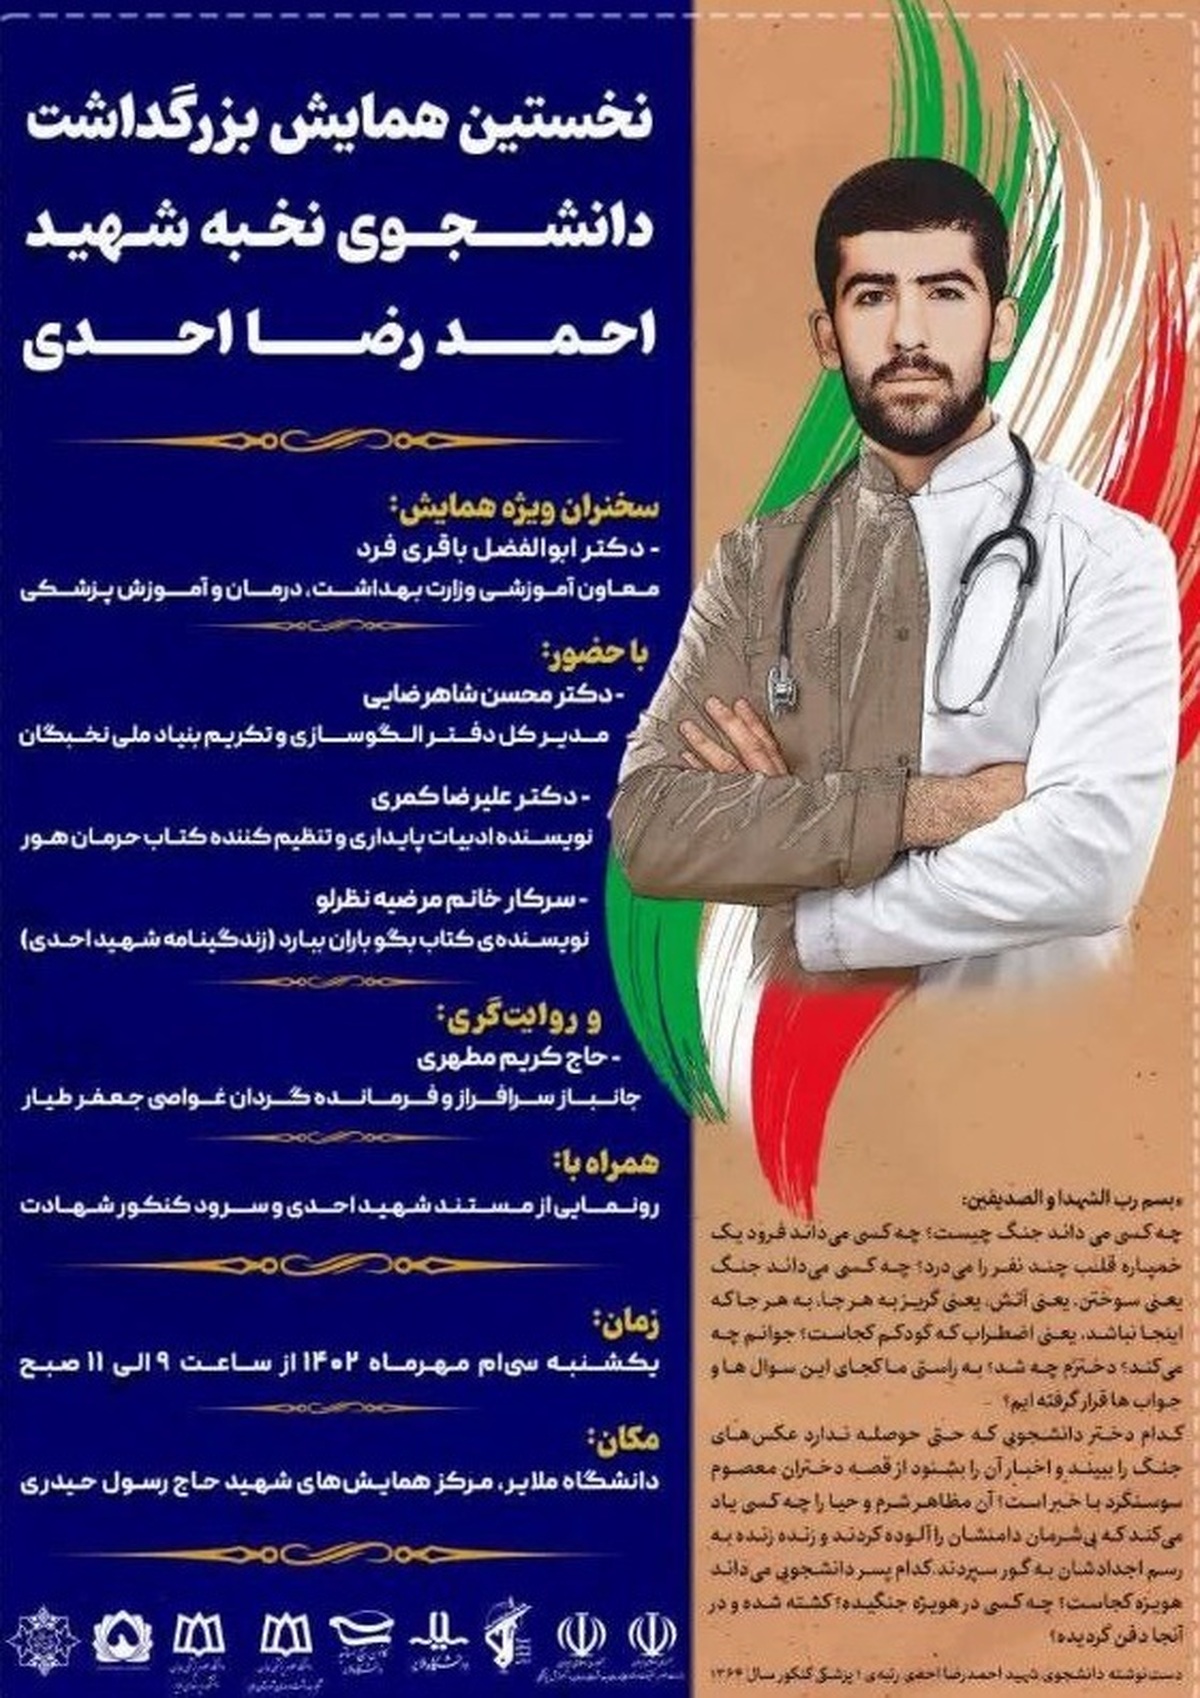 نخستین همایش ملی نکوداشت شهید نخبه پزشکی احمدرضا احدی در دانشگاه ملایر برگزار می شود